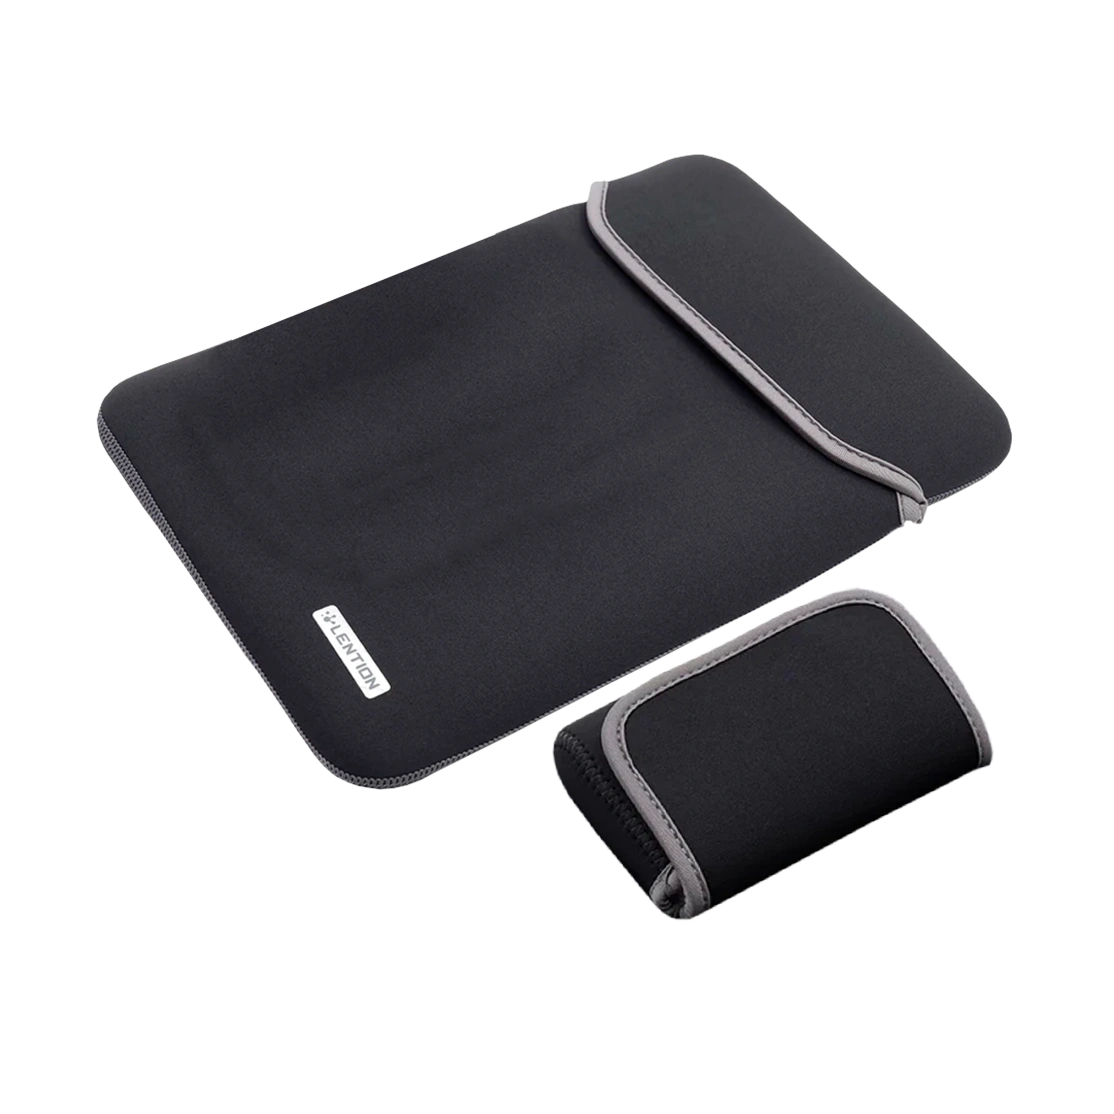 کیف مک بوک 13 اینچی و کیف لوازم جانبی لنشن مدل PCB-B330